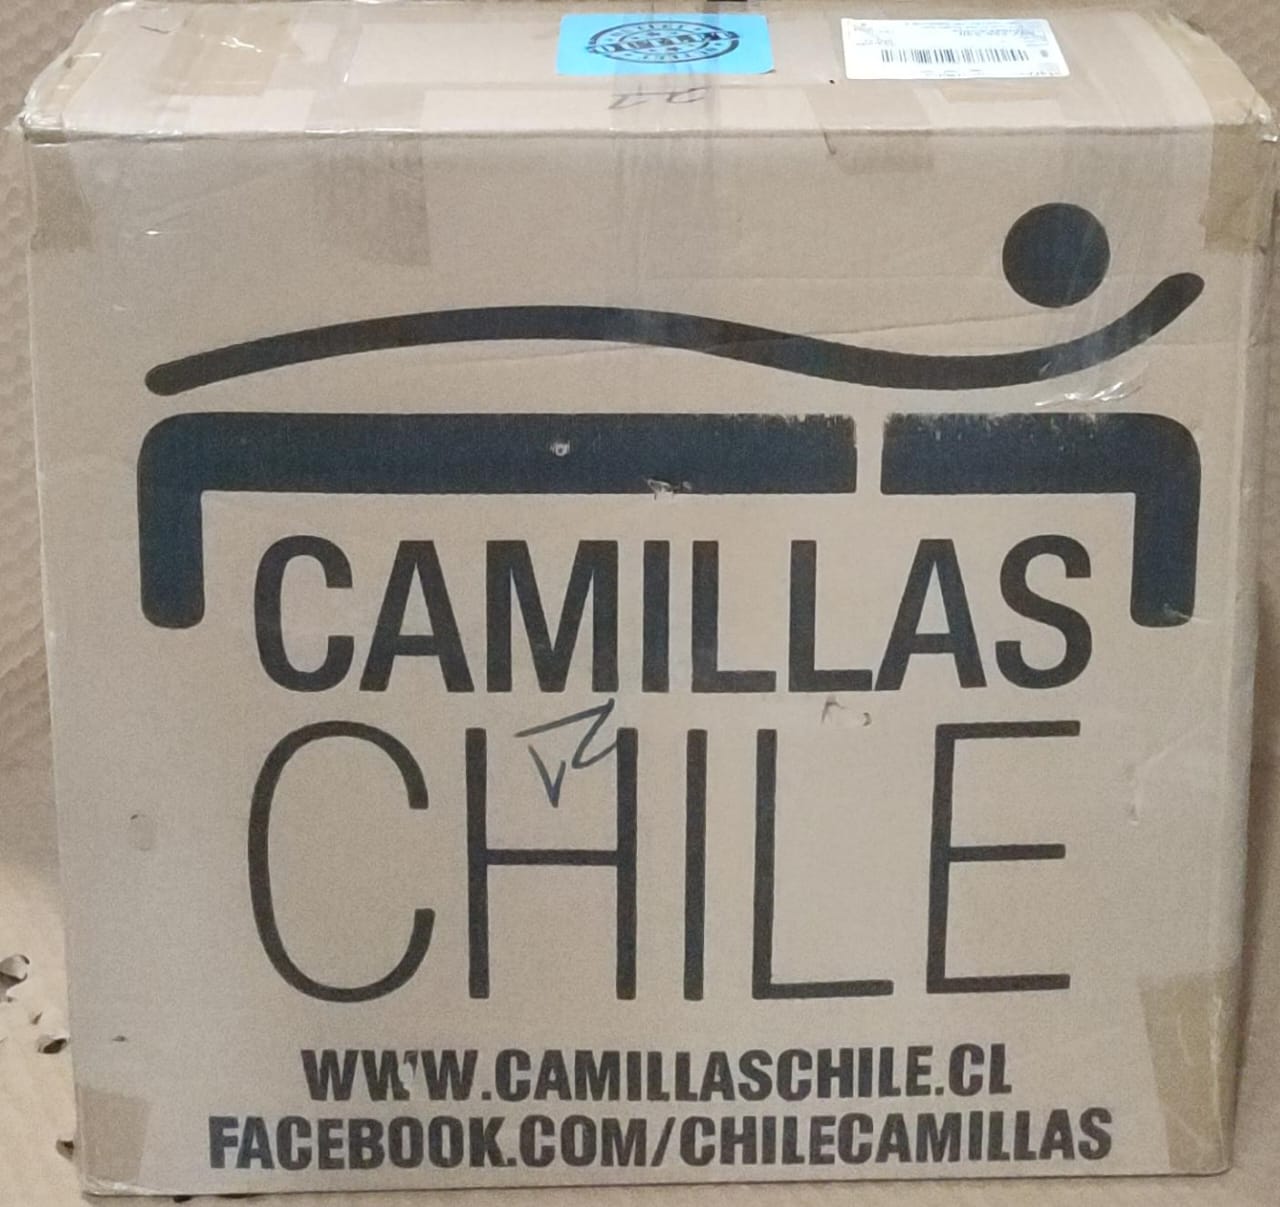 Piso Con Rueda Y Respaldo Camillas Chile R1 Negro [Openbox]